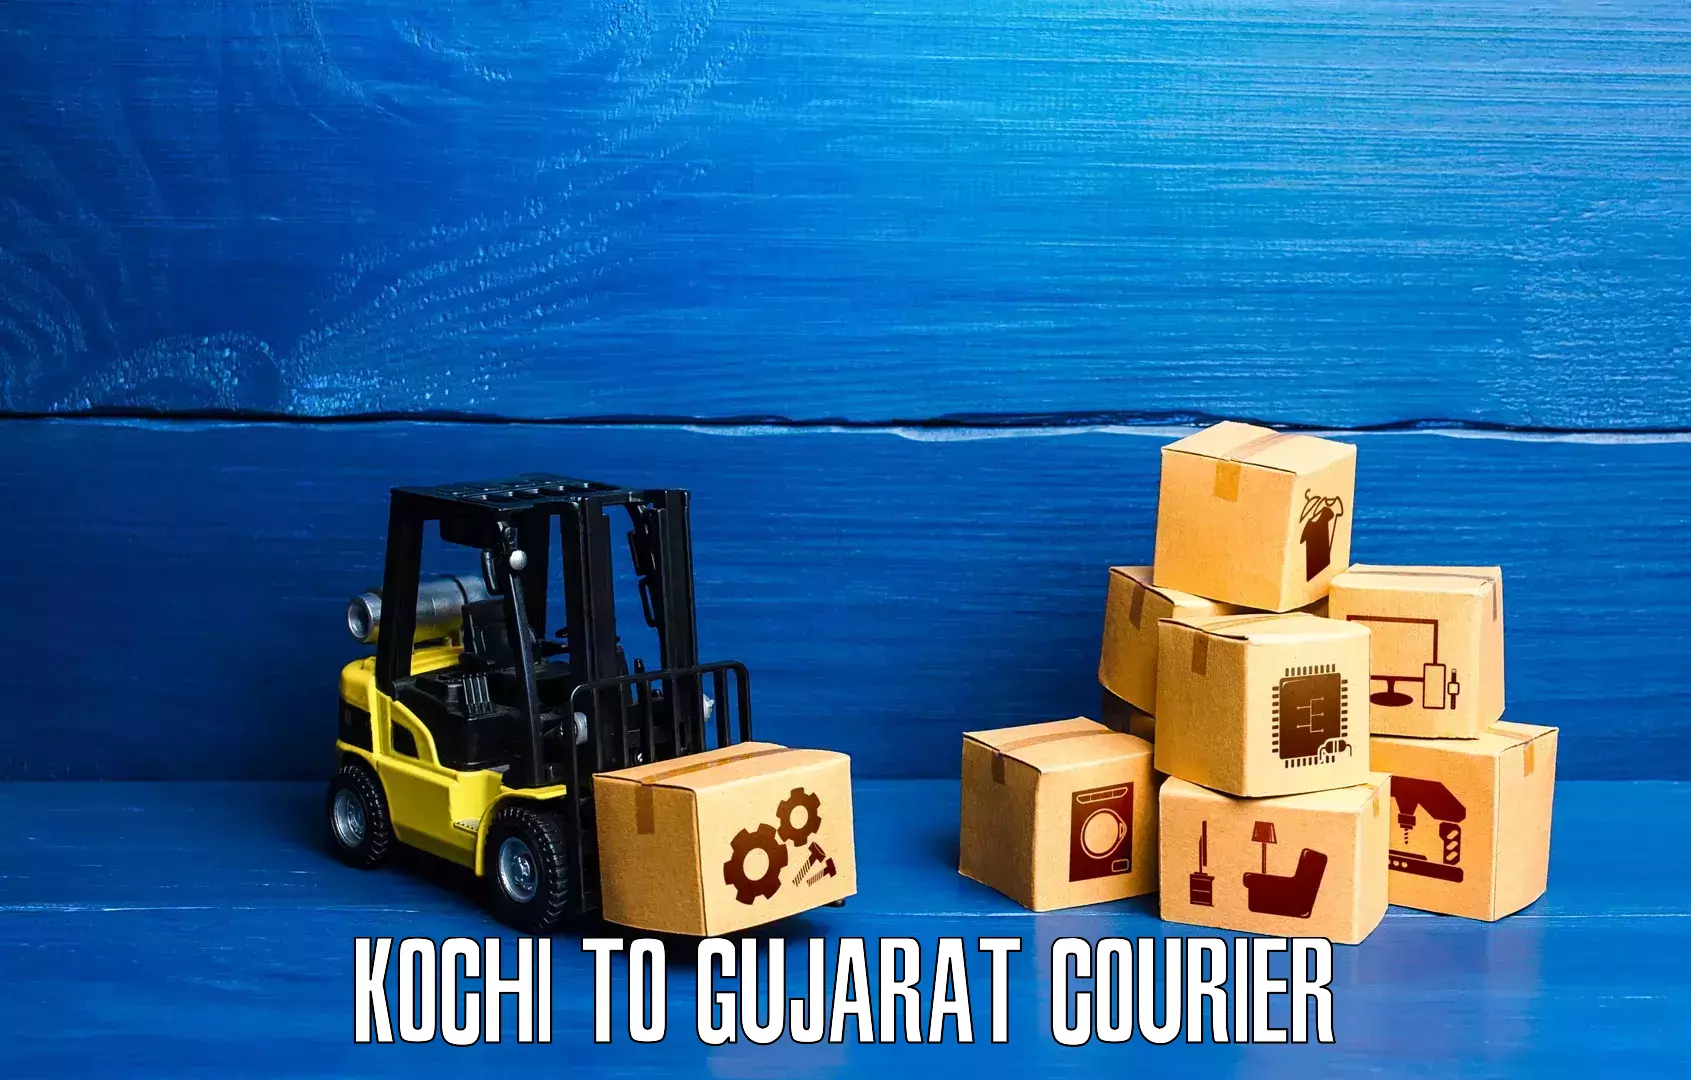 Global logistics network Kochi to Gujarat